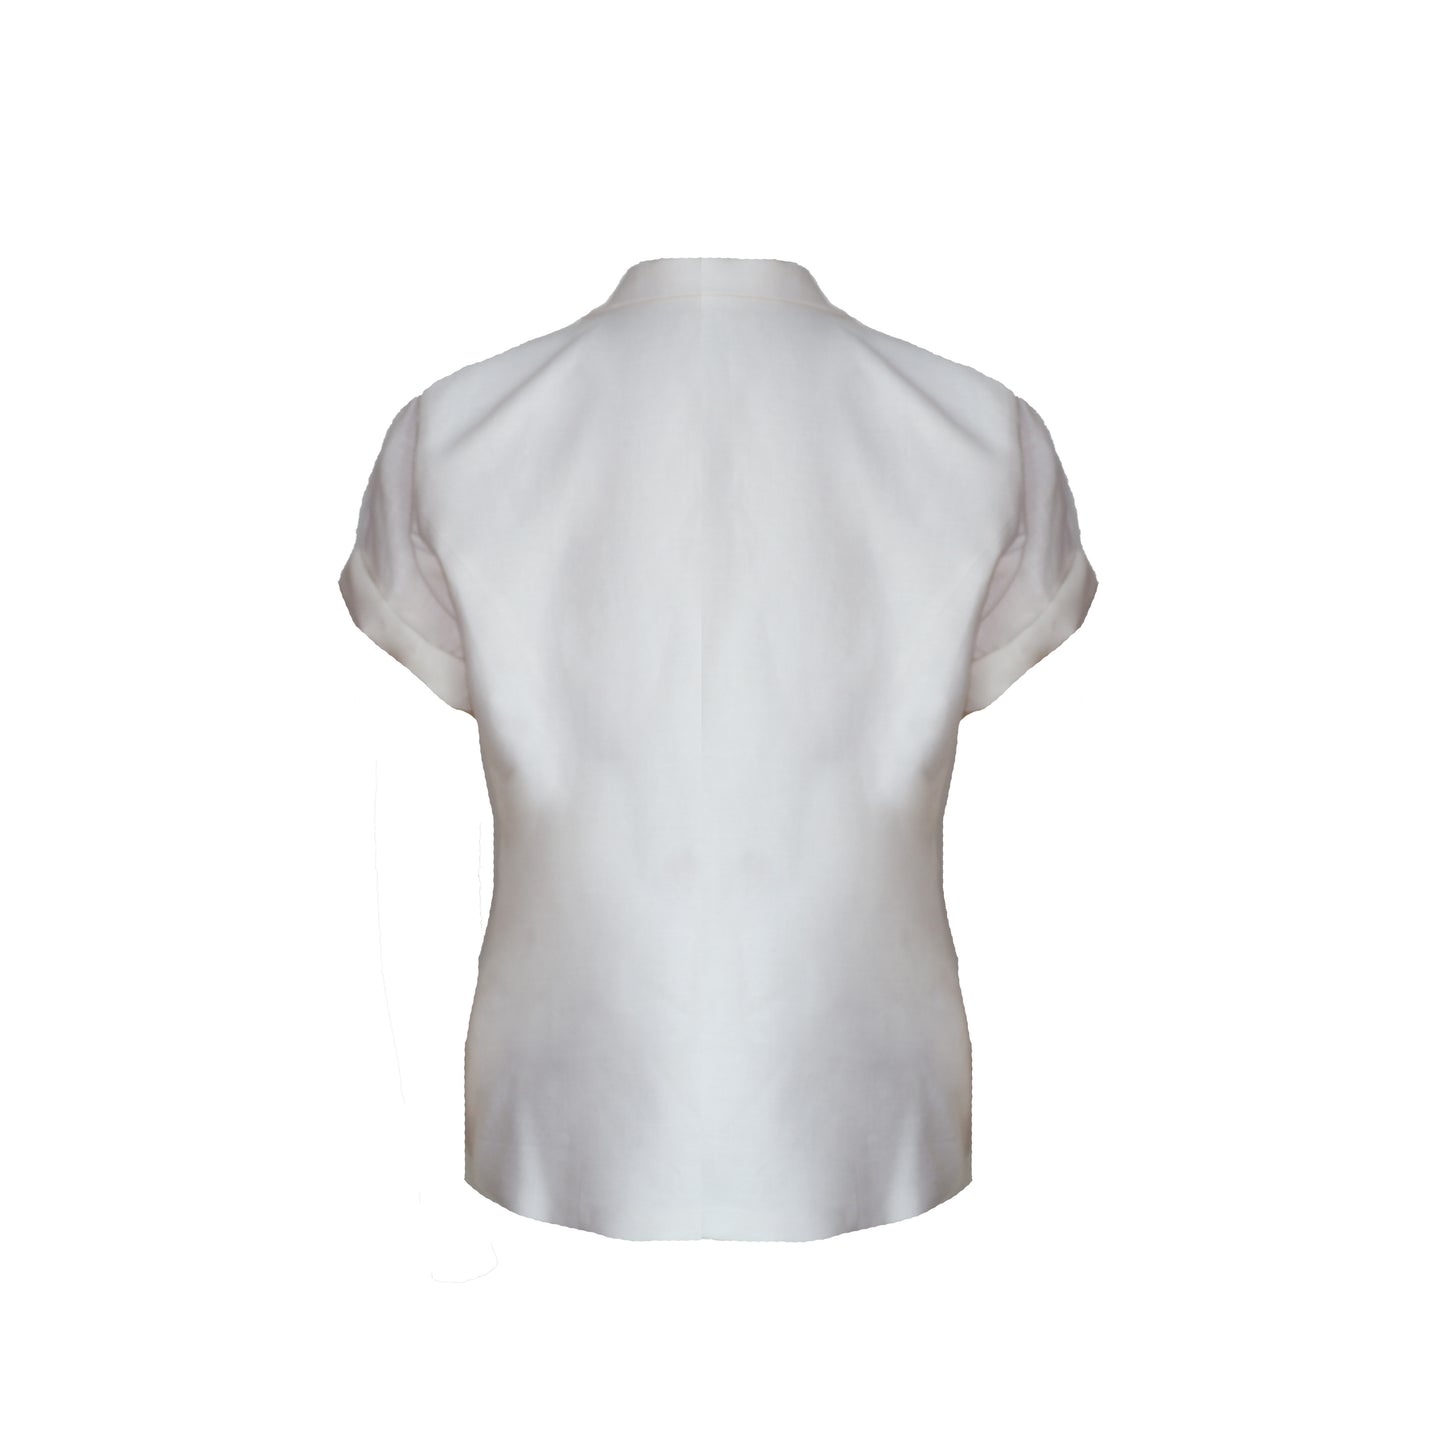 White Linen Blazer with Handmade Cotton Tassels